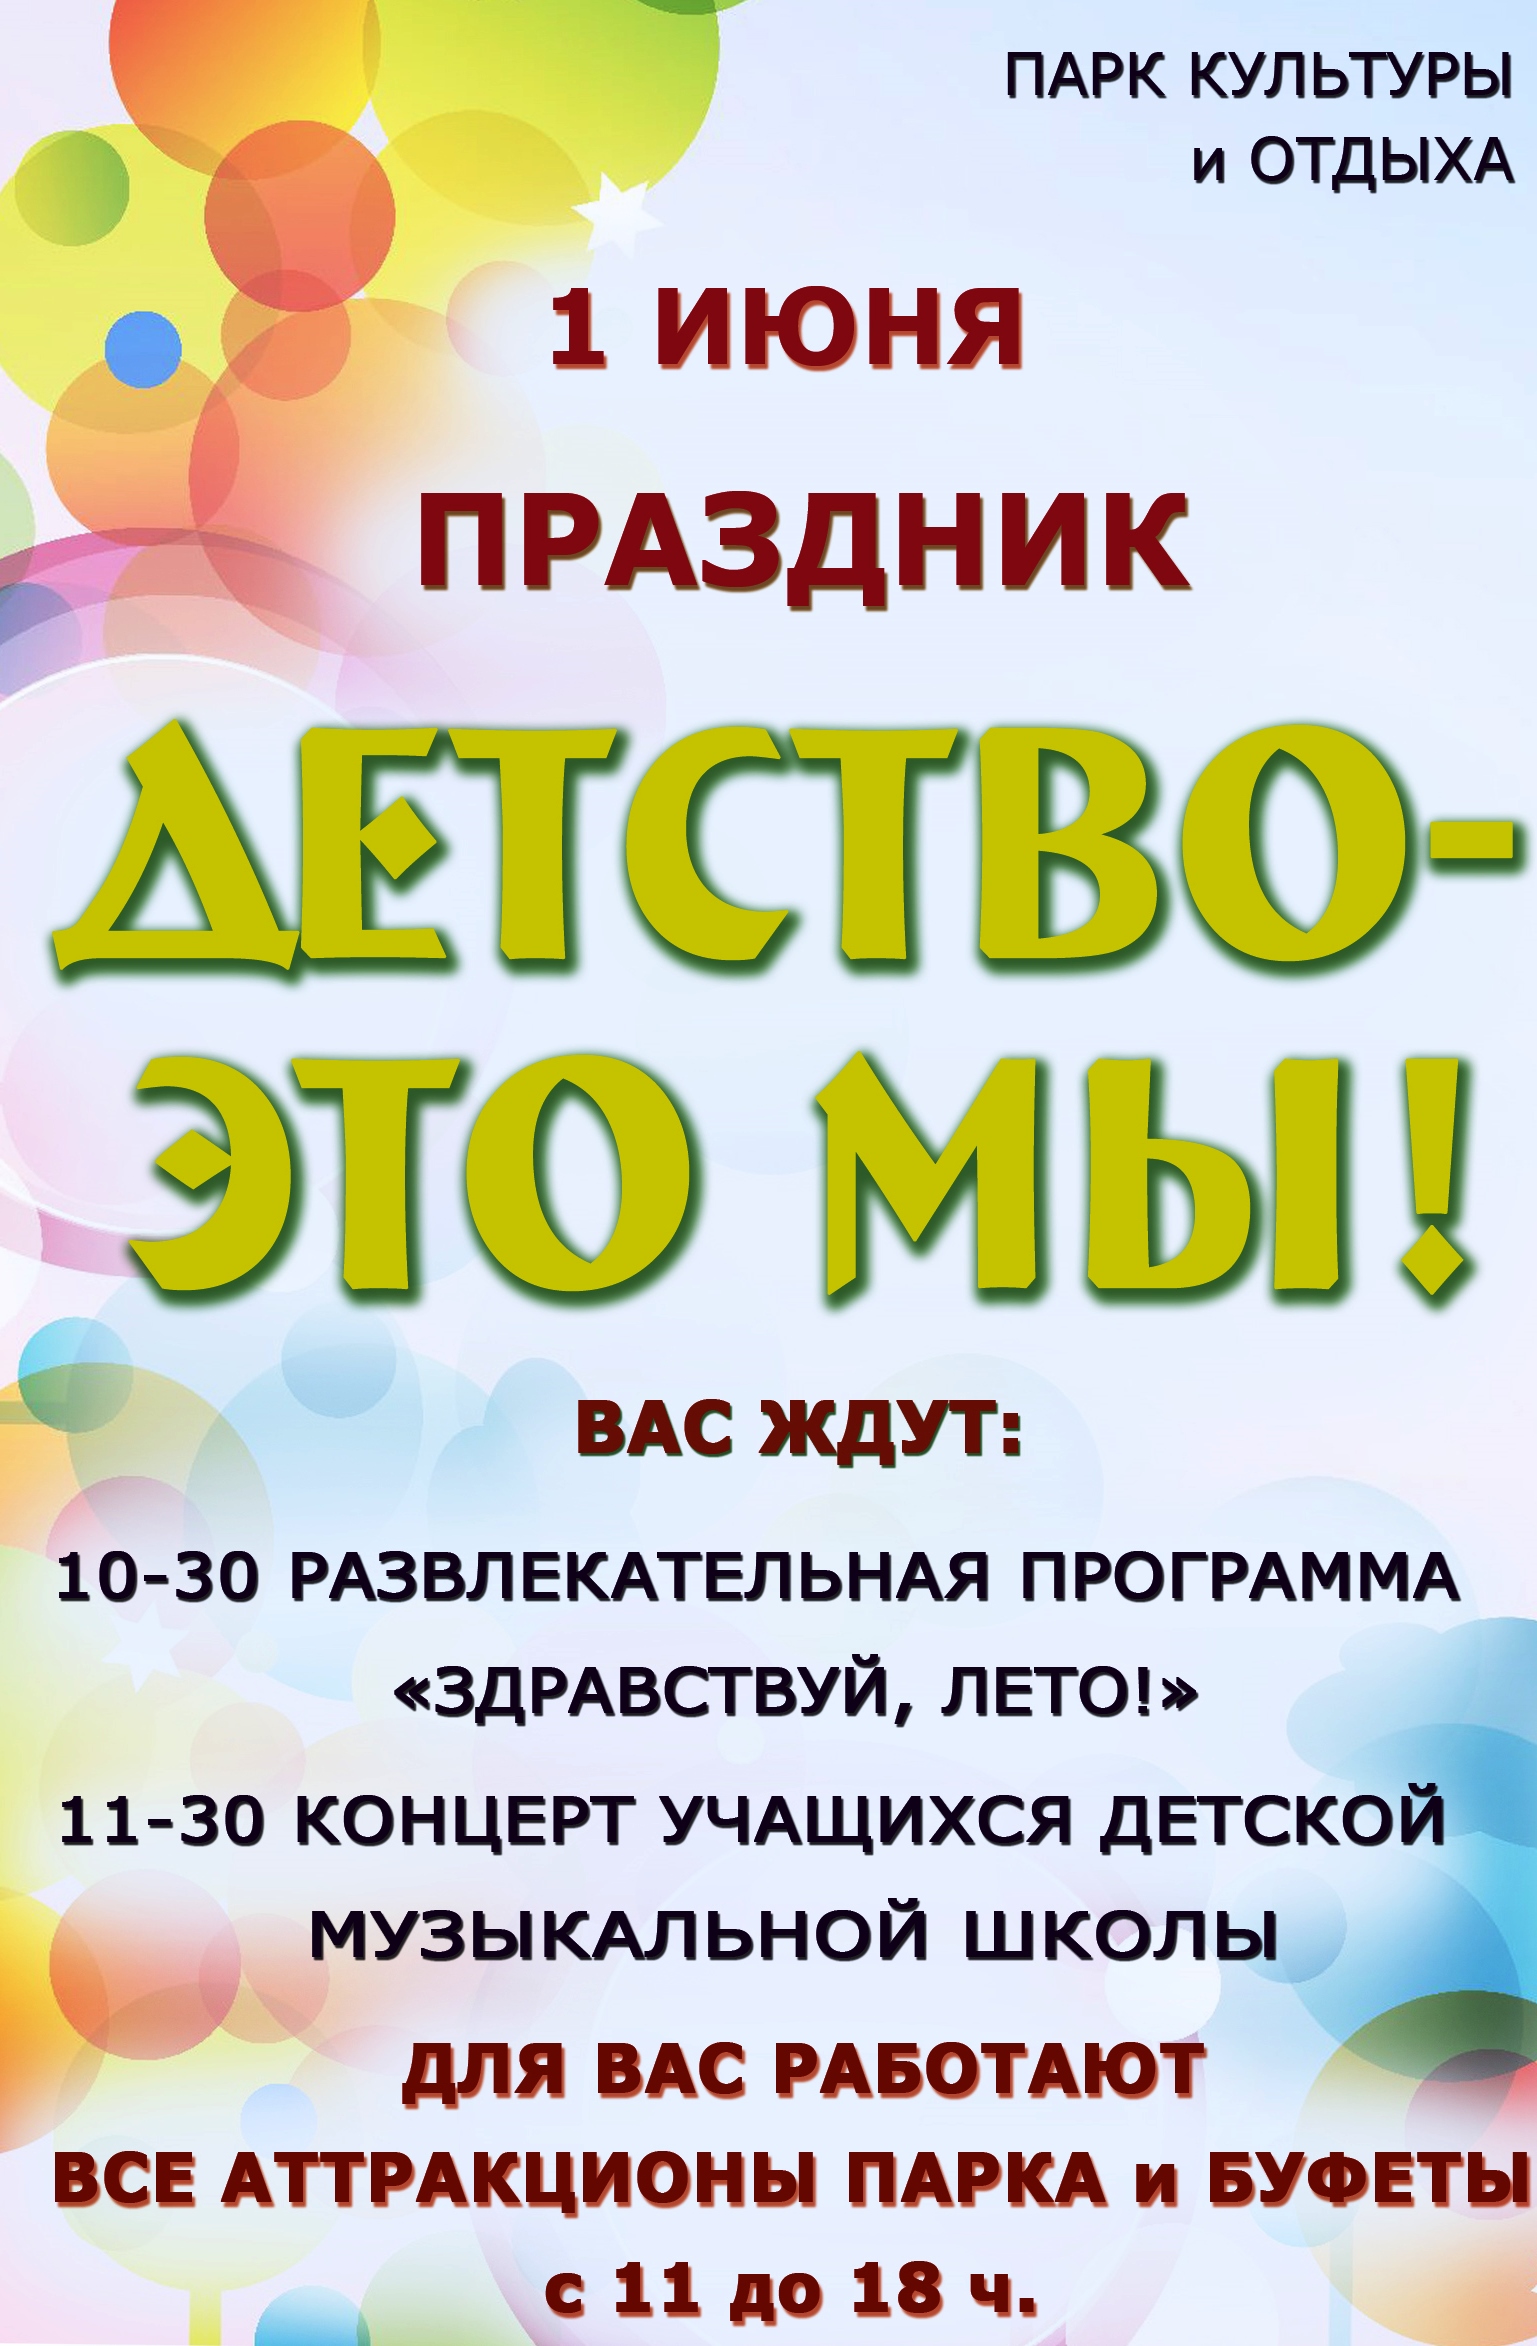 В День защиты детей в новозыбковском парке можно будет сэкономить на аттракционах